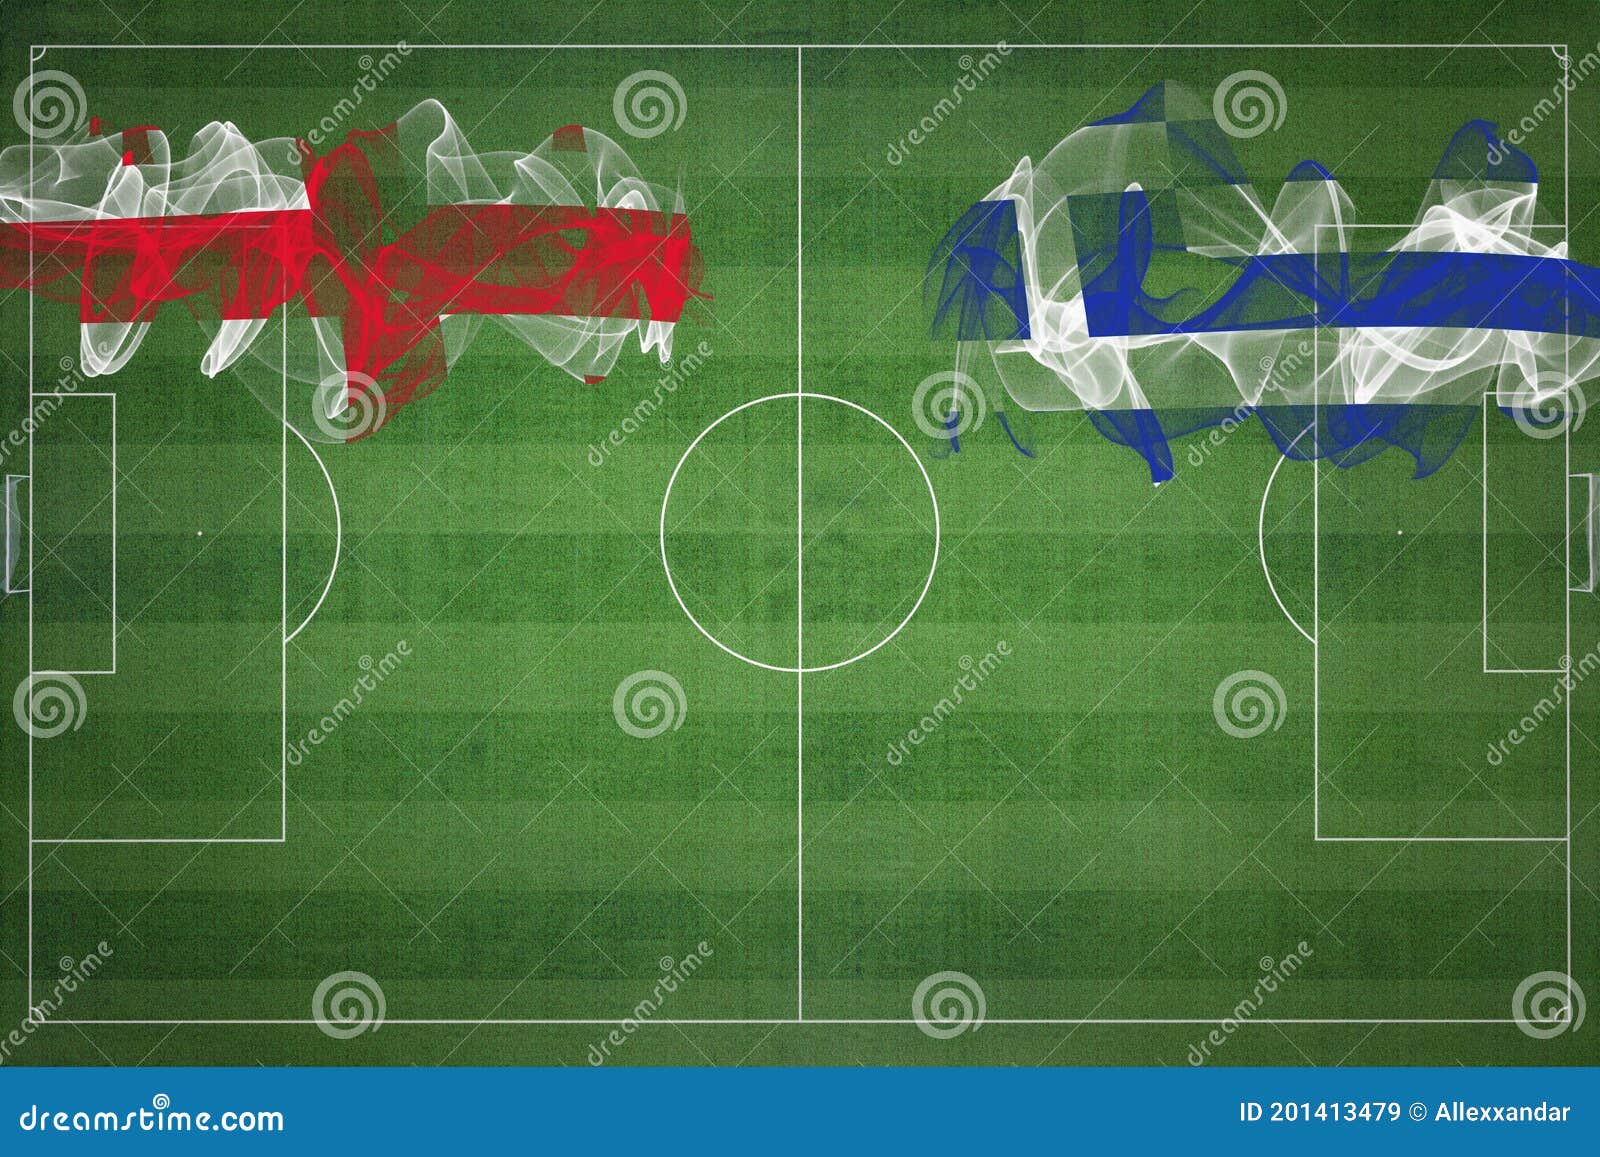 Georgia Vs Grécia Futebol Jogo Nacional Entre Bandeiras Nacionais Futebol  Campo De Futebol Espaço Ilustração Stock - Ilustração de grama, fundo:  201413479